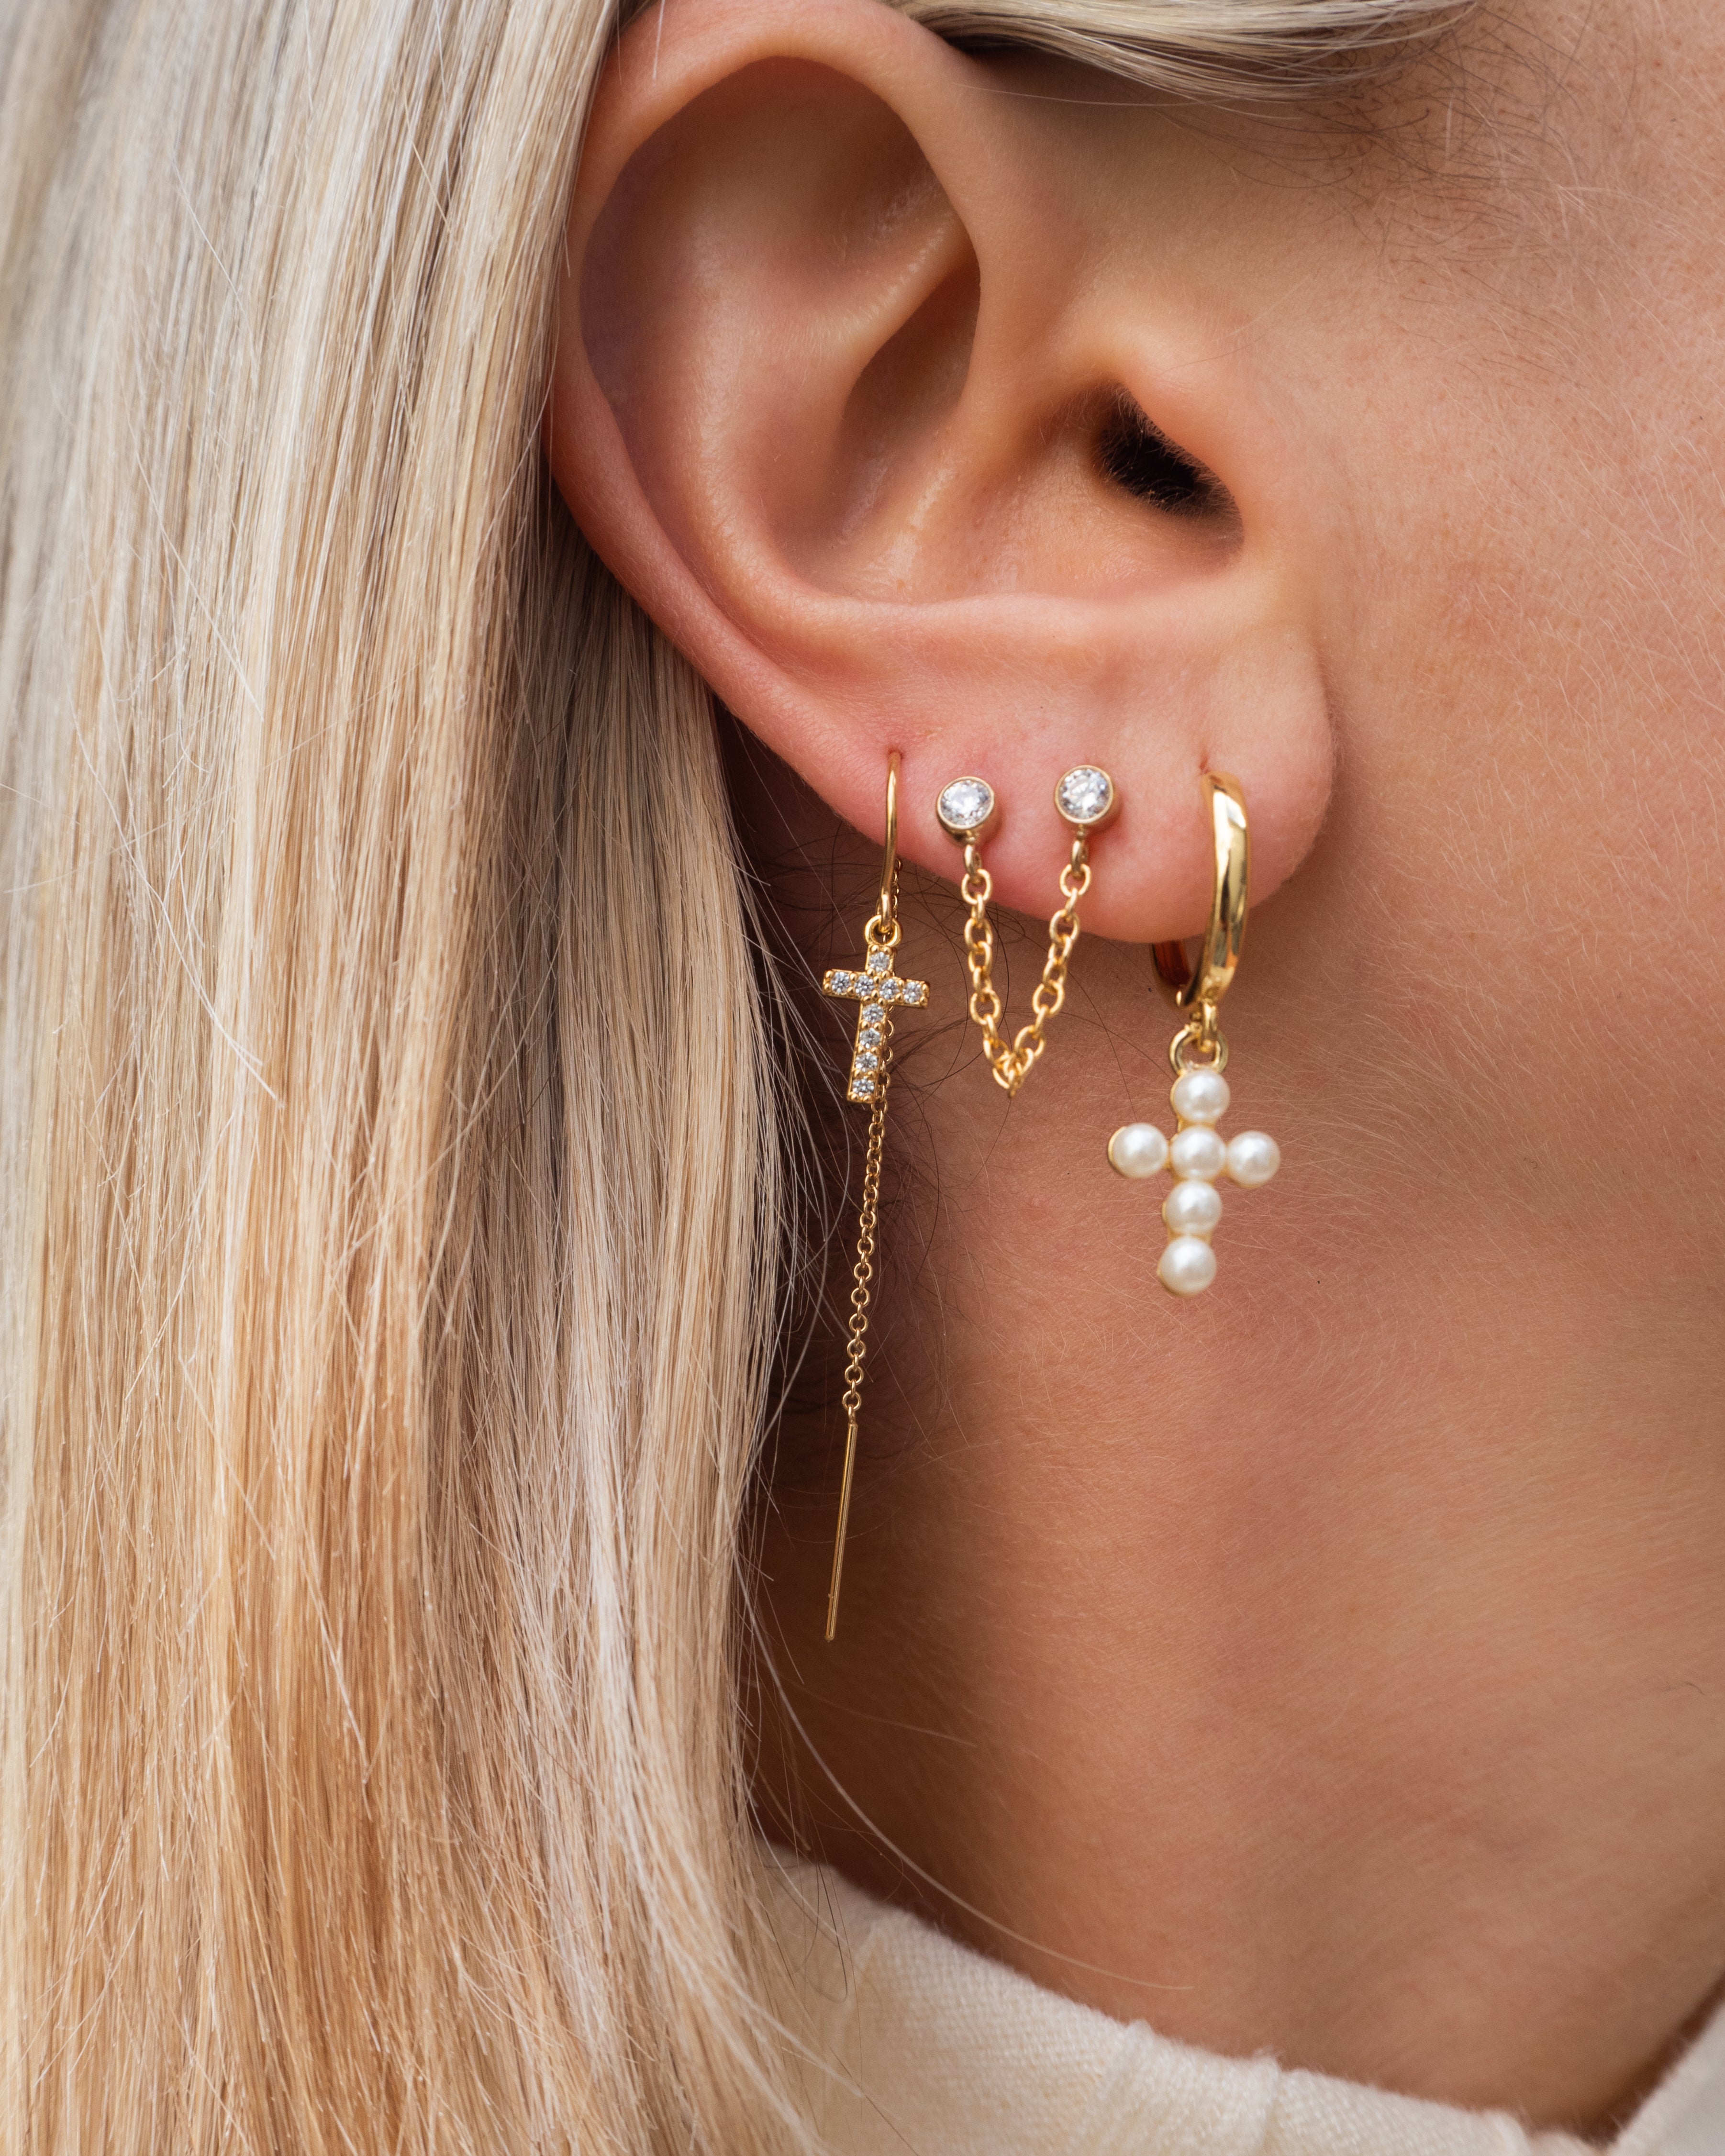 cross hoops, cross earrings, hoops with cross, pearl cross, hoop earrings, stacking earrings, stacking hoops, dainty earrings, stacking earrings, cross hoops, dainty